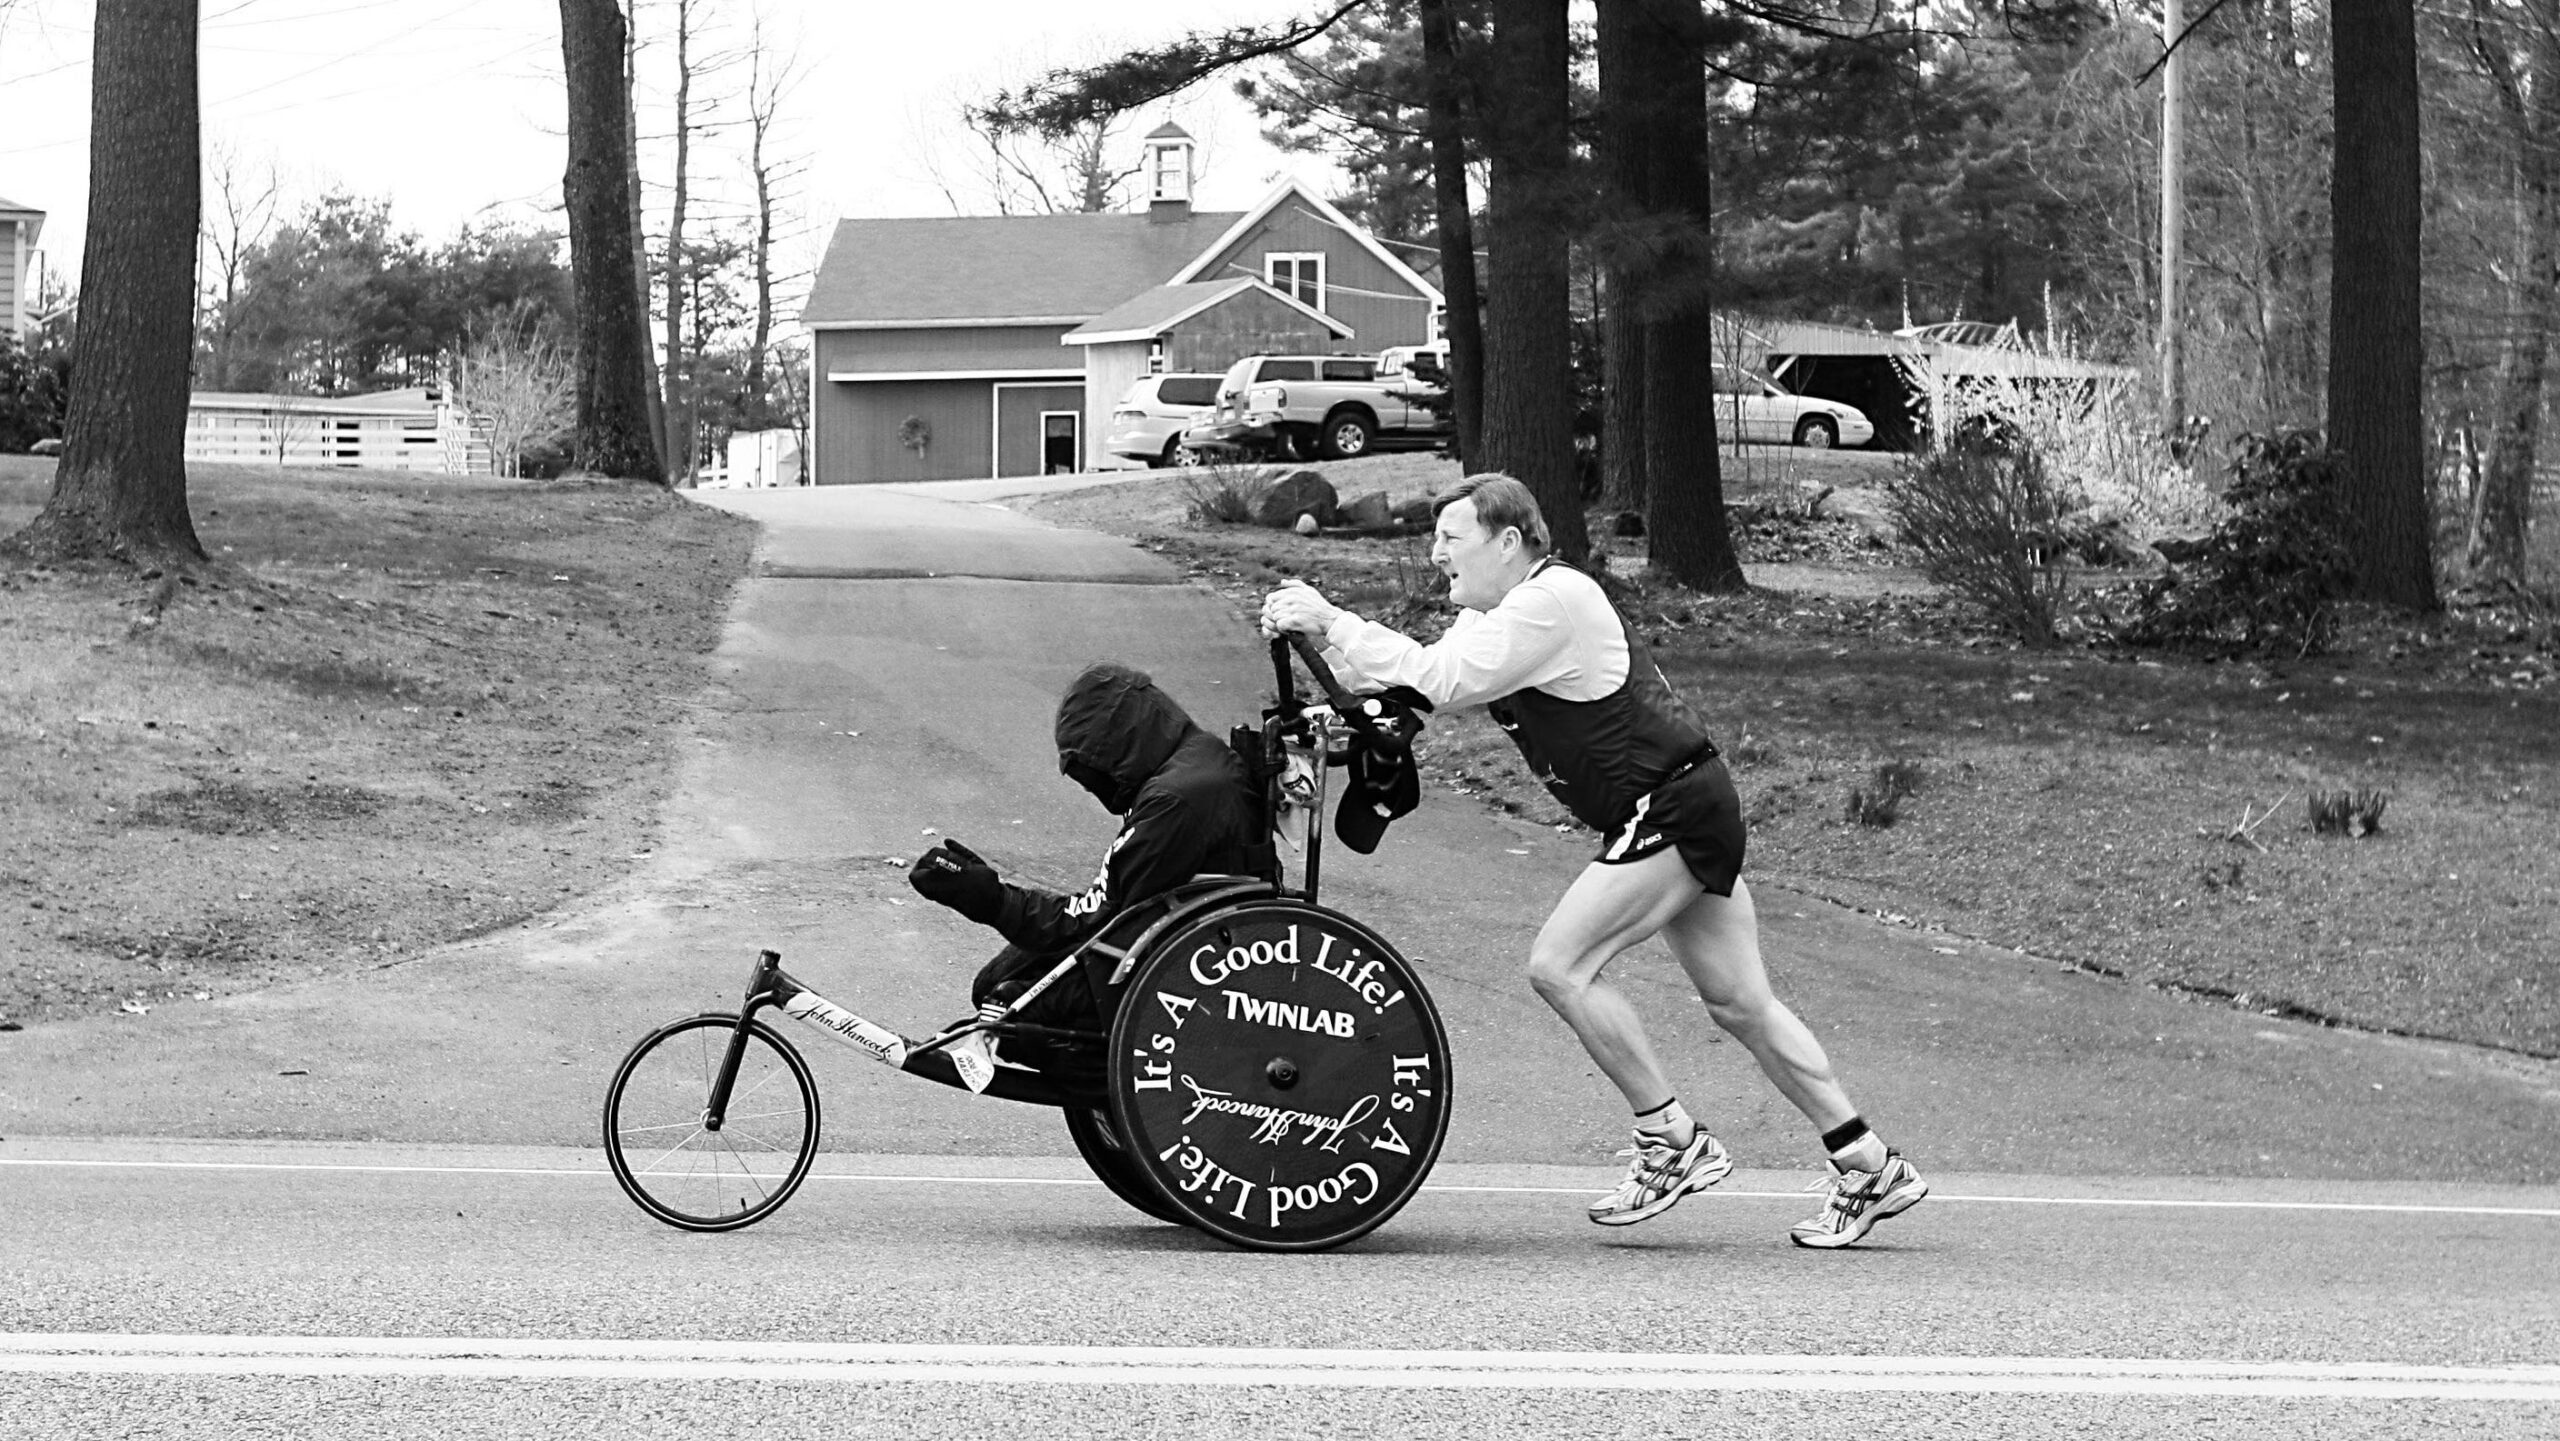 Na zdjęciu znajduje się mężczyzna w stroju biegacza, który pcha przed sobą wózek, na którym znajduje się drugi mężczyzna.